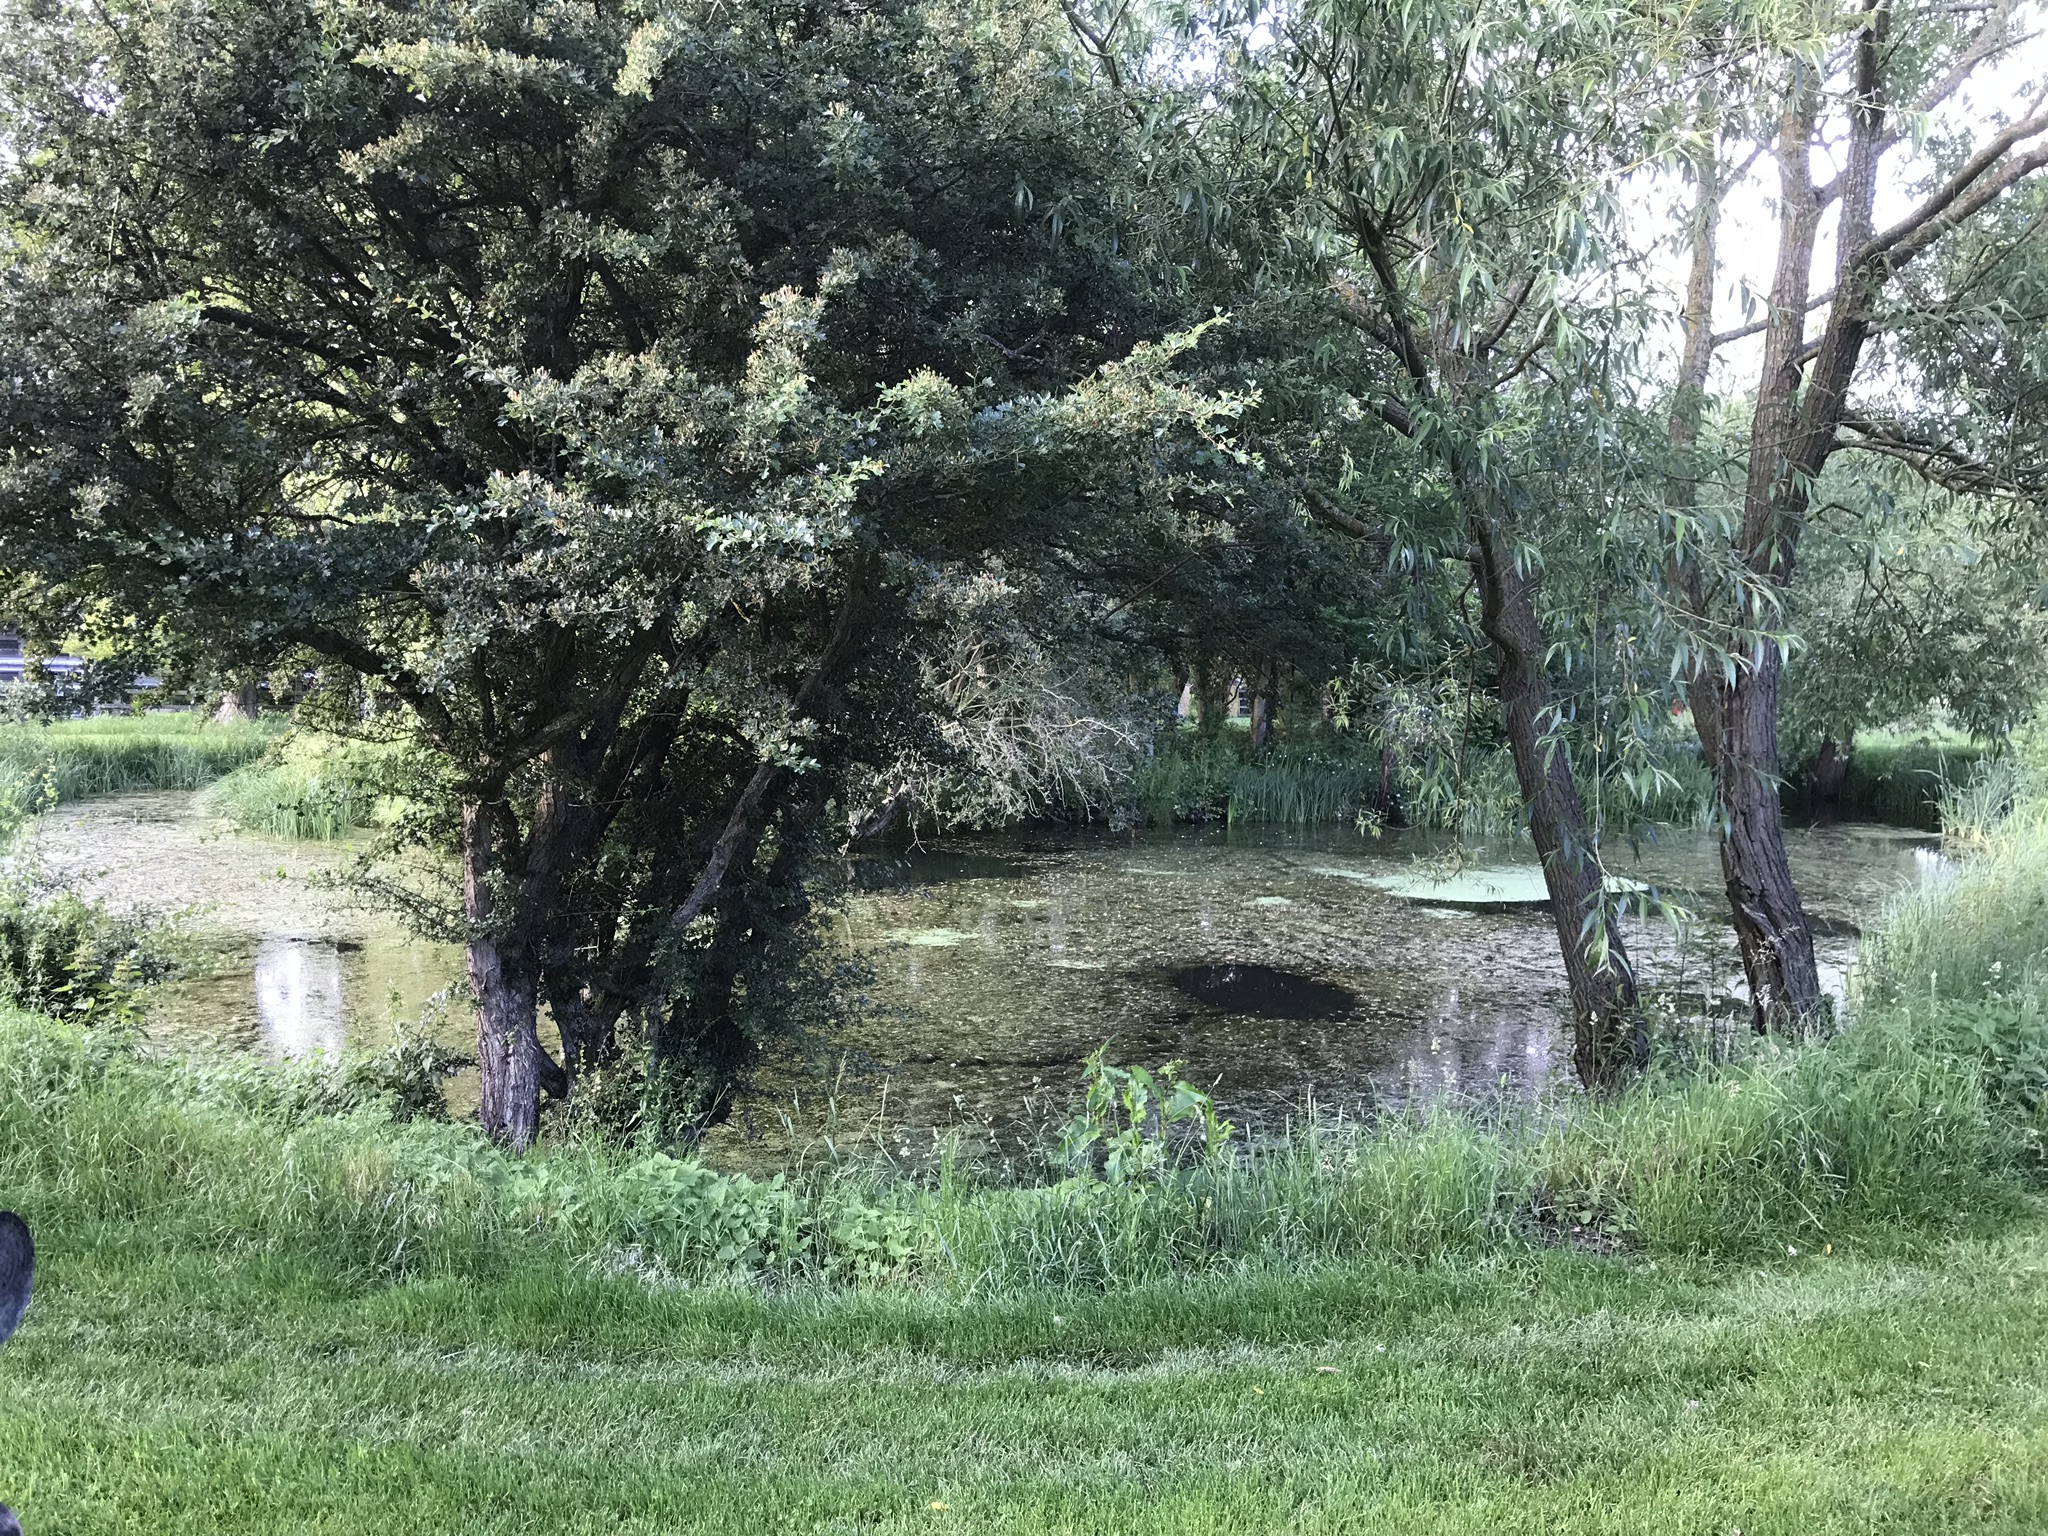 A hidden pond!